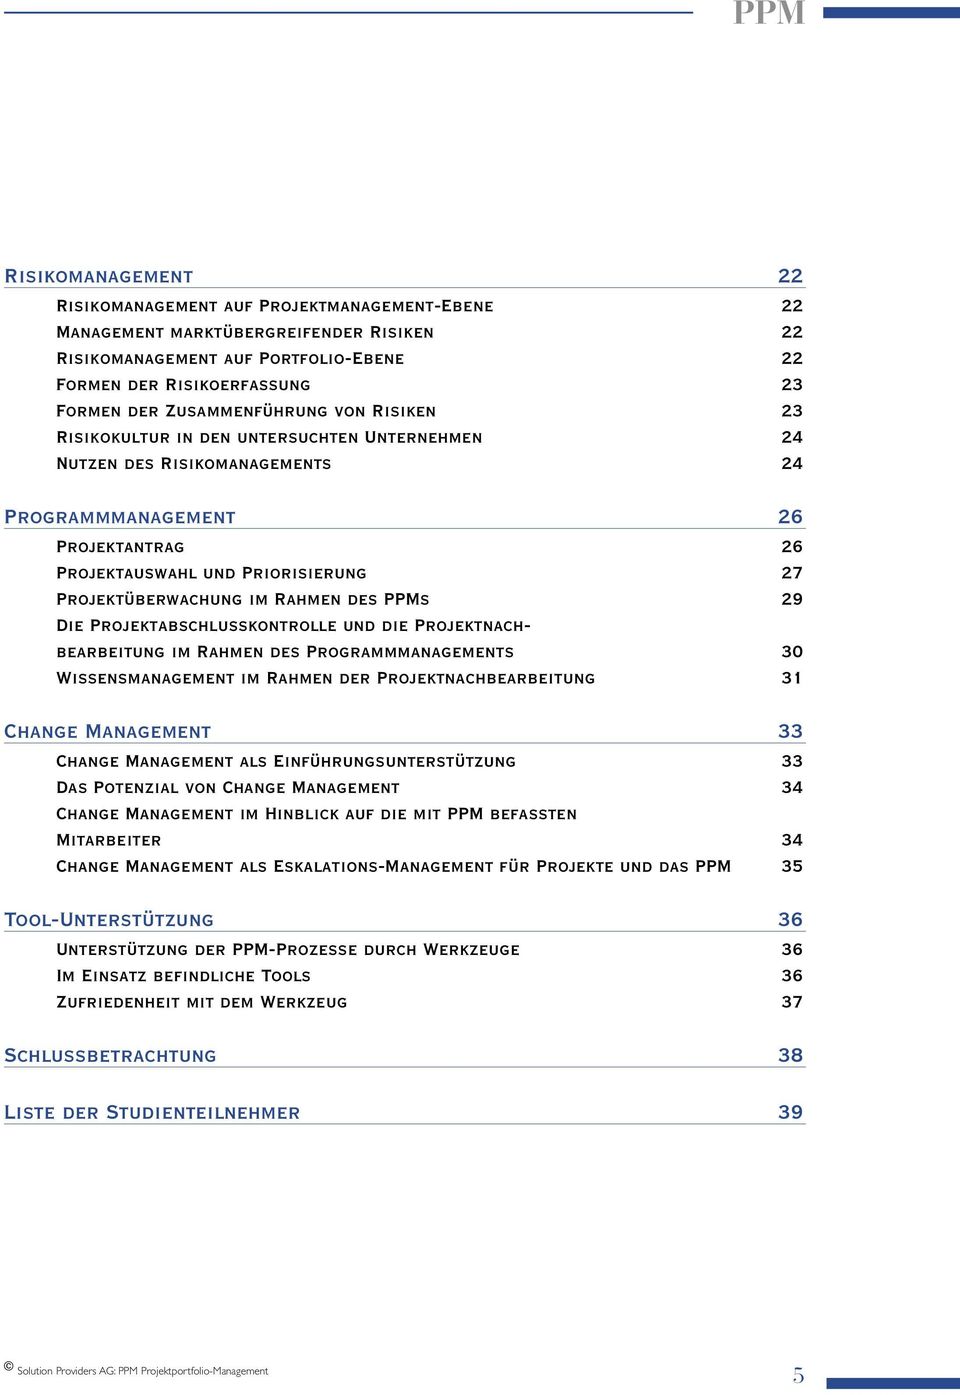 Projektüberwachung im Rahmen des PPMs 29 Die Projektabschlusskontrolle und die Projektnachbearbeitung im Rahmen des Programmmanagements 30 Wissensmanagement im Rahmen der Projektnachbearbeitung 31